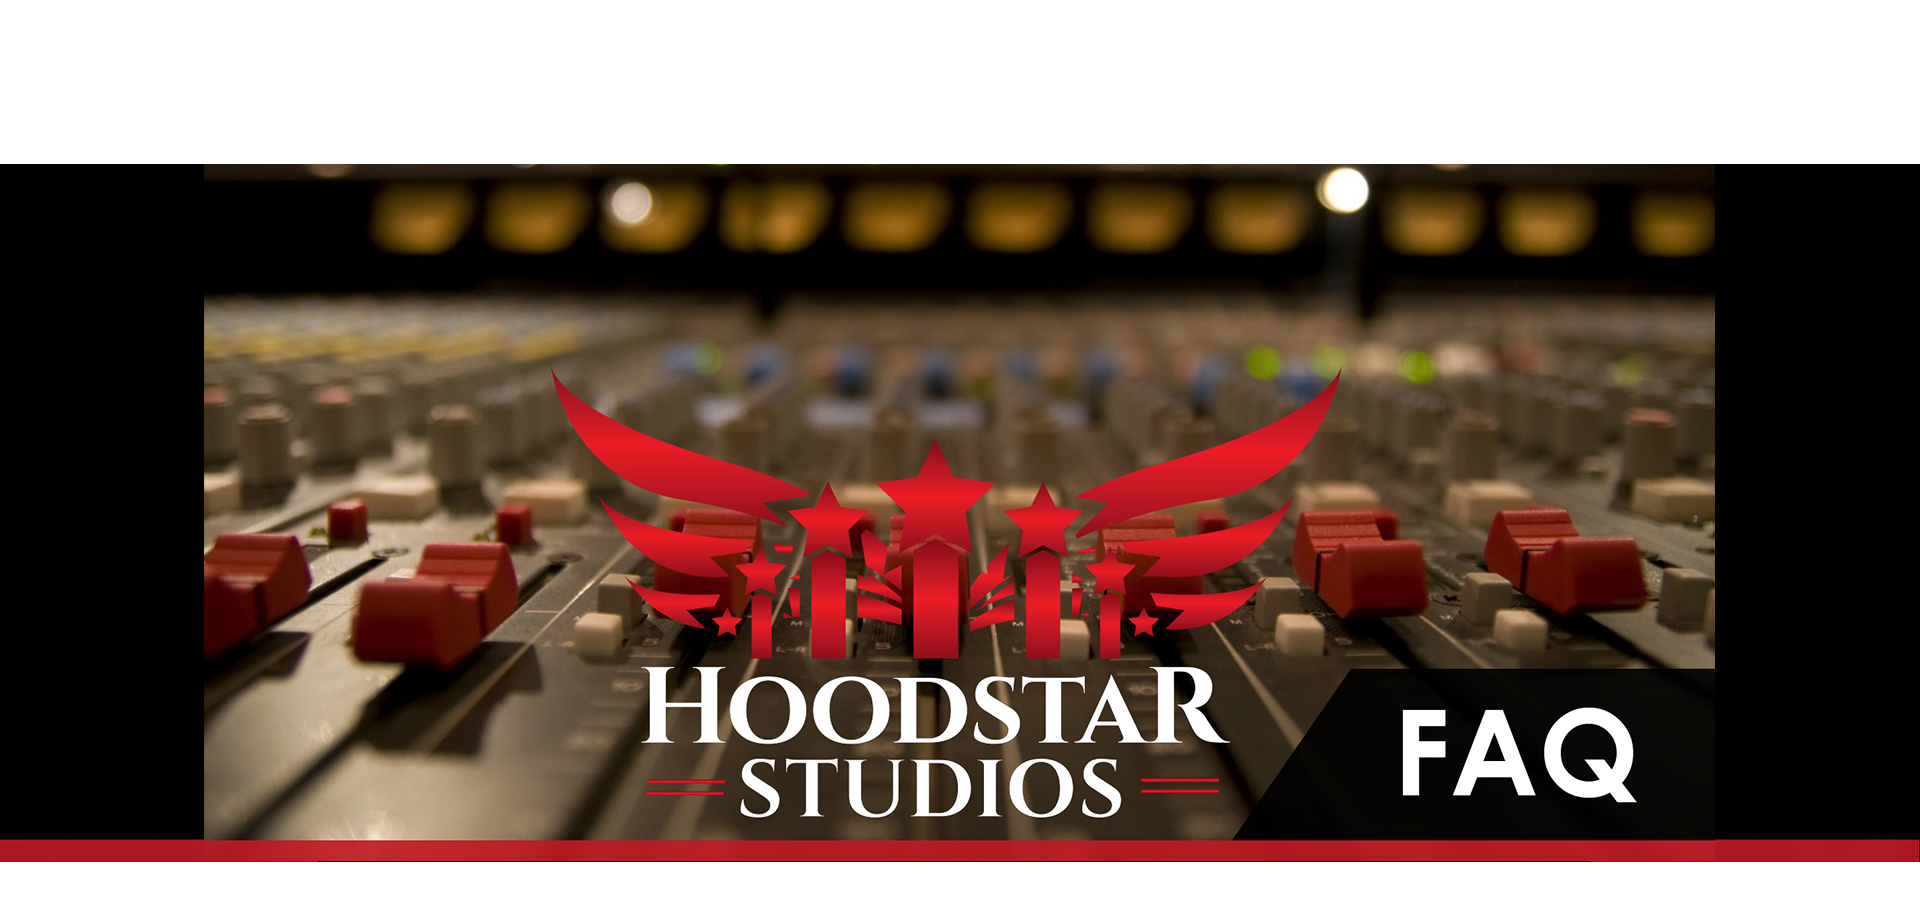 Hoodstar Studios FAQ2